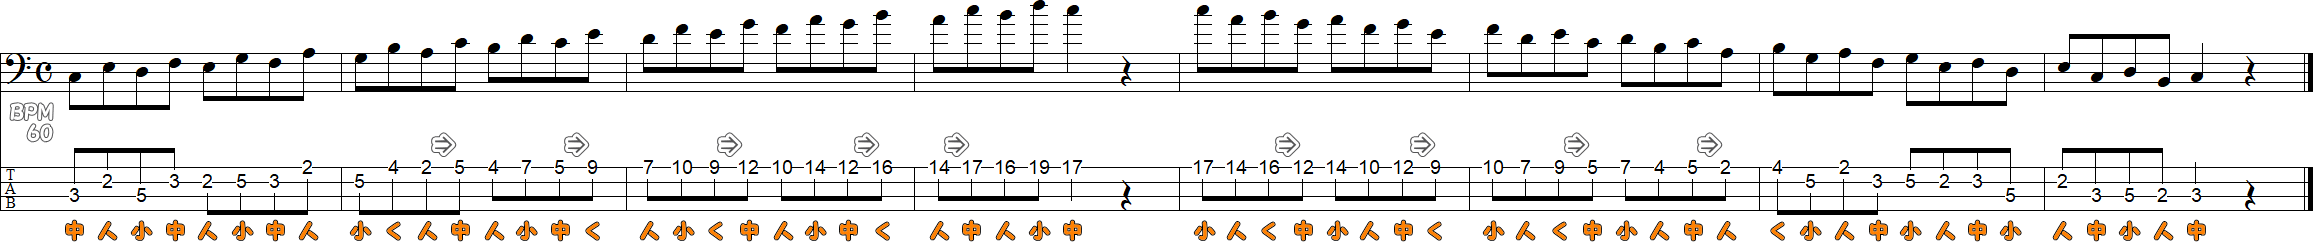 ハ長調のスケール練習1の譜面